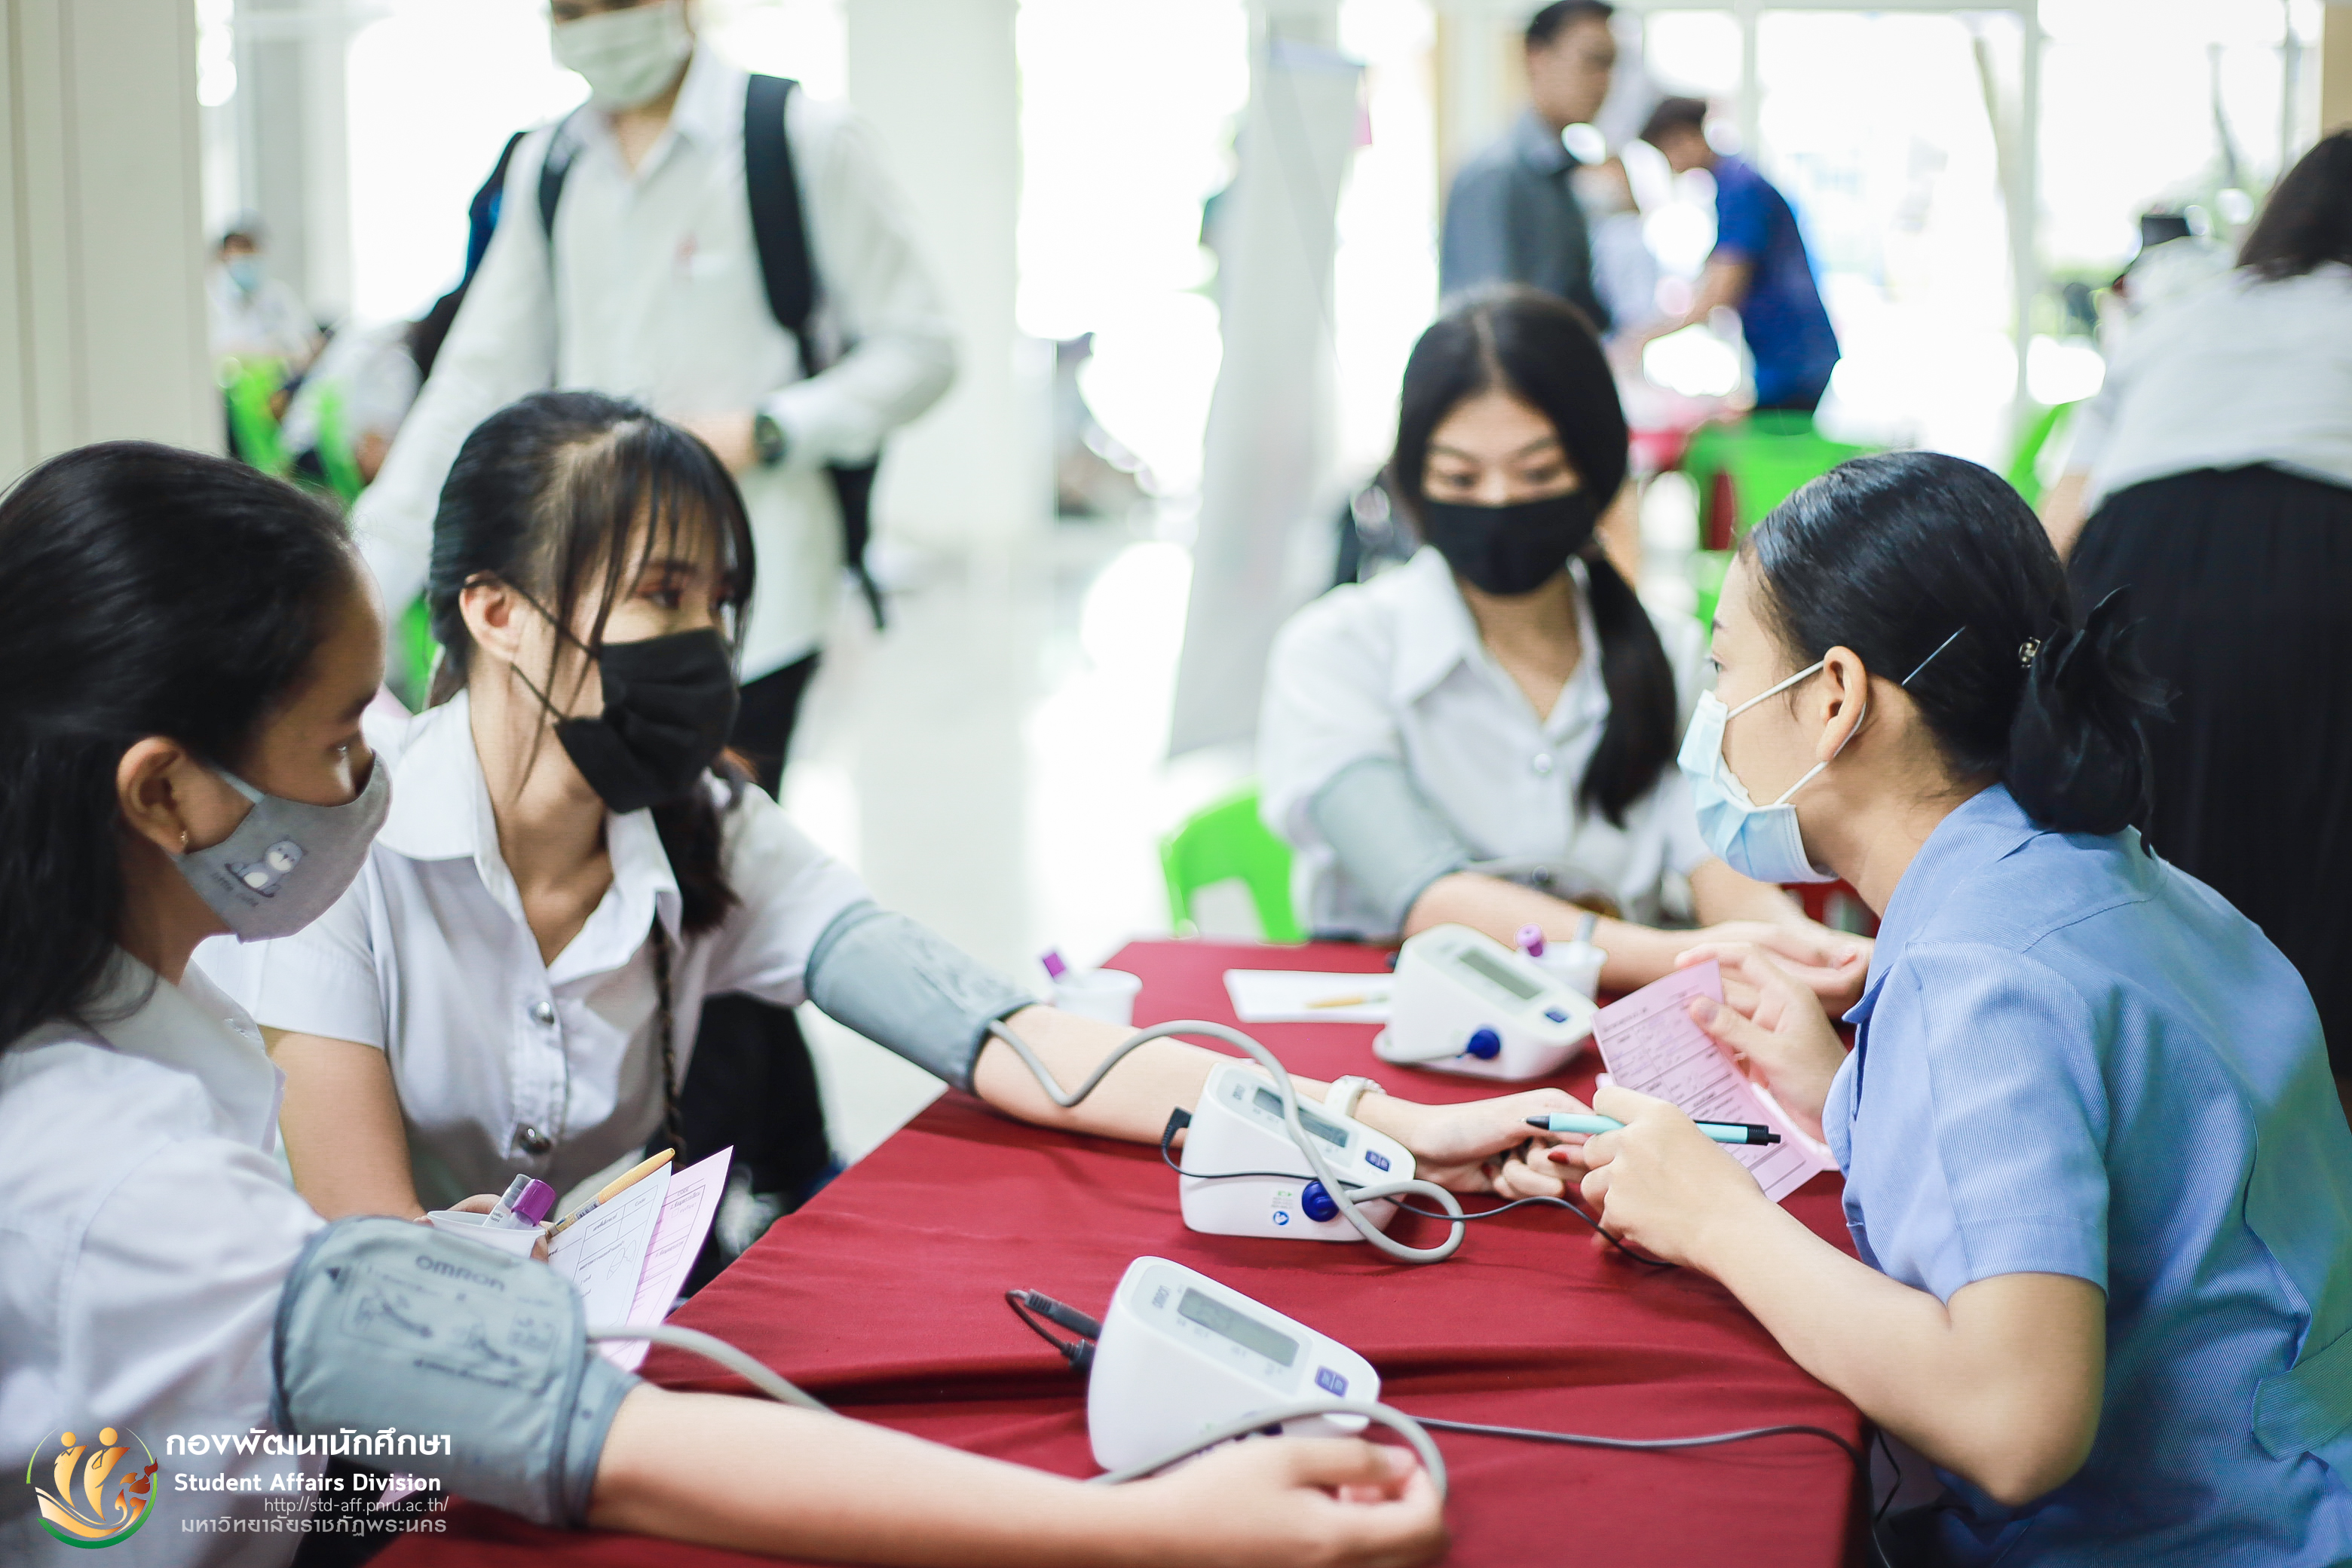 3 ตุลาคม 2563 กองพัฒนานักศึกษา มหาวิทยาลัยราชภัฏพระนคร จัดให้มีการตรวจสุขภาพนักศึกษาใหม่ภาคปกติ ประจำปีการศึกษา 2563